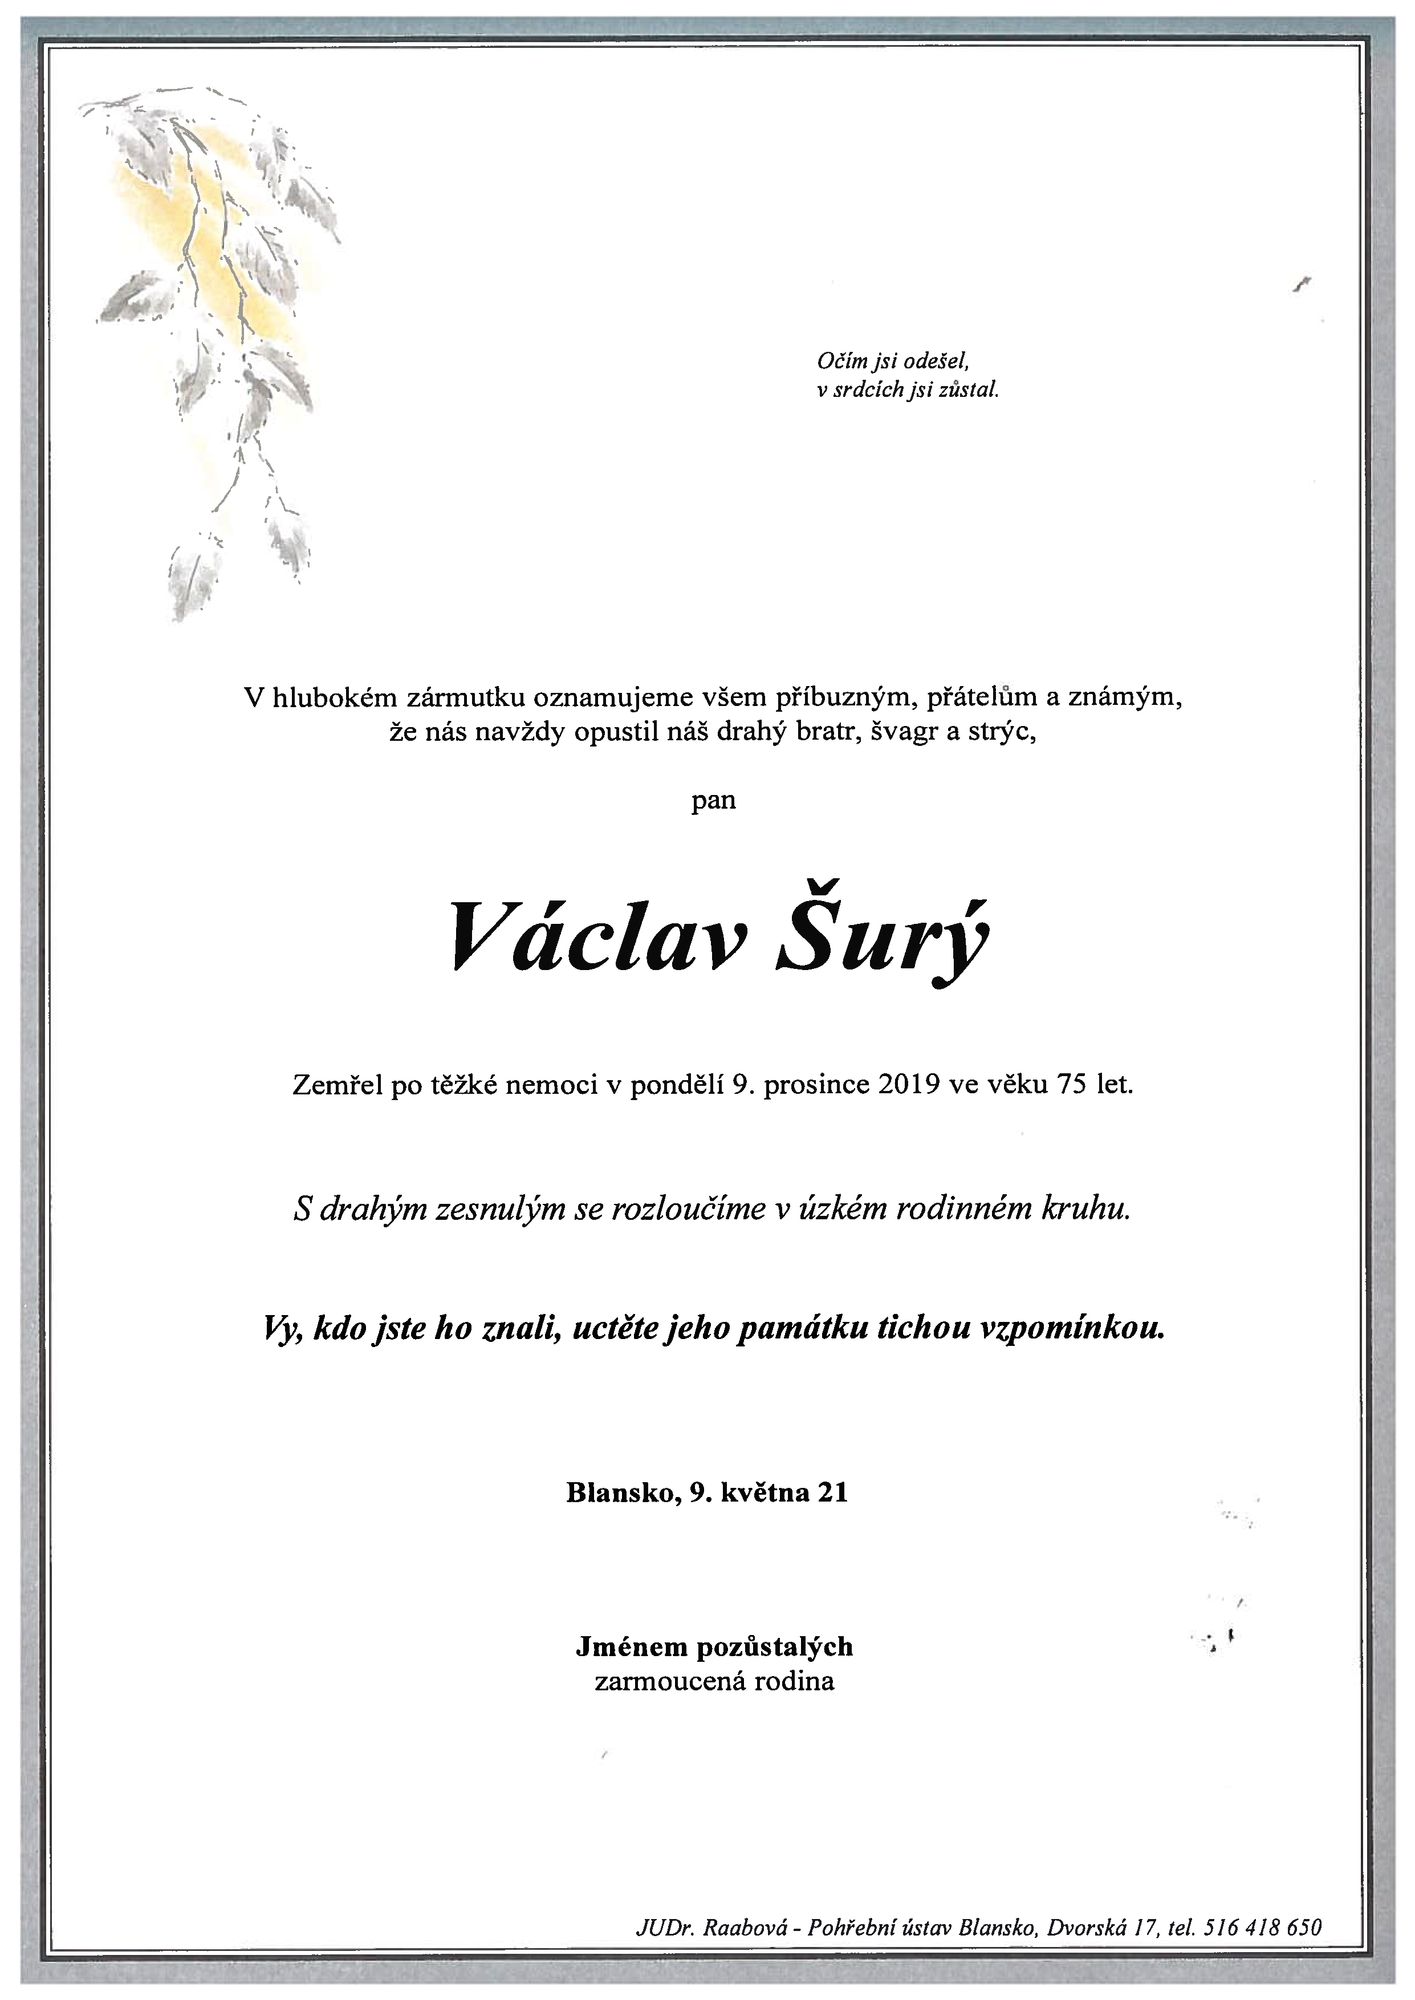 Václav Šurý